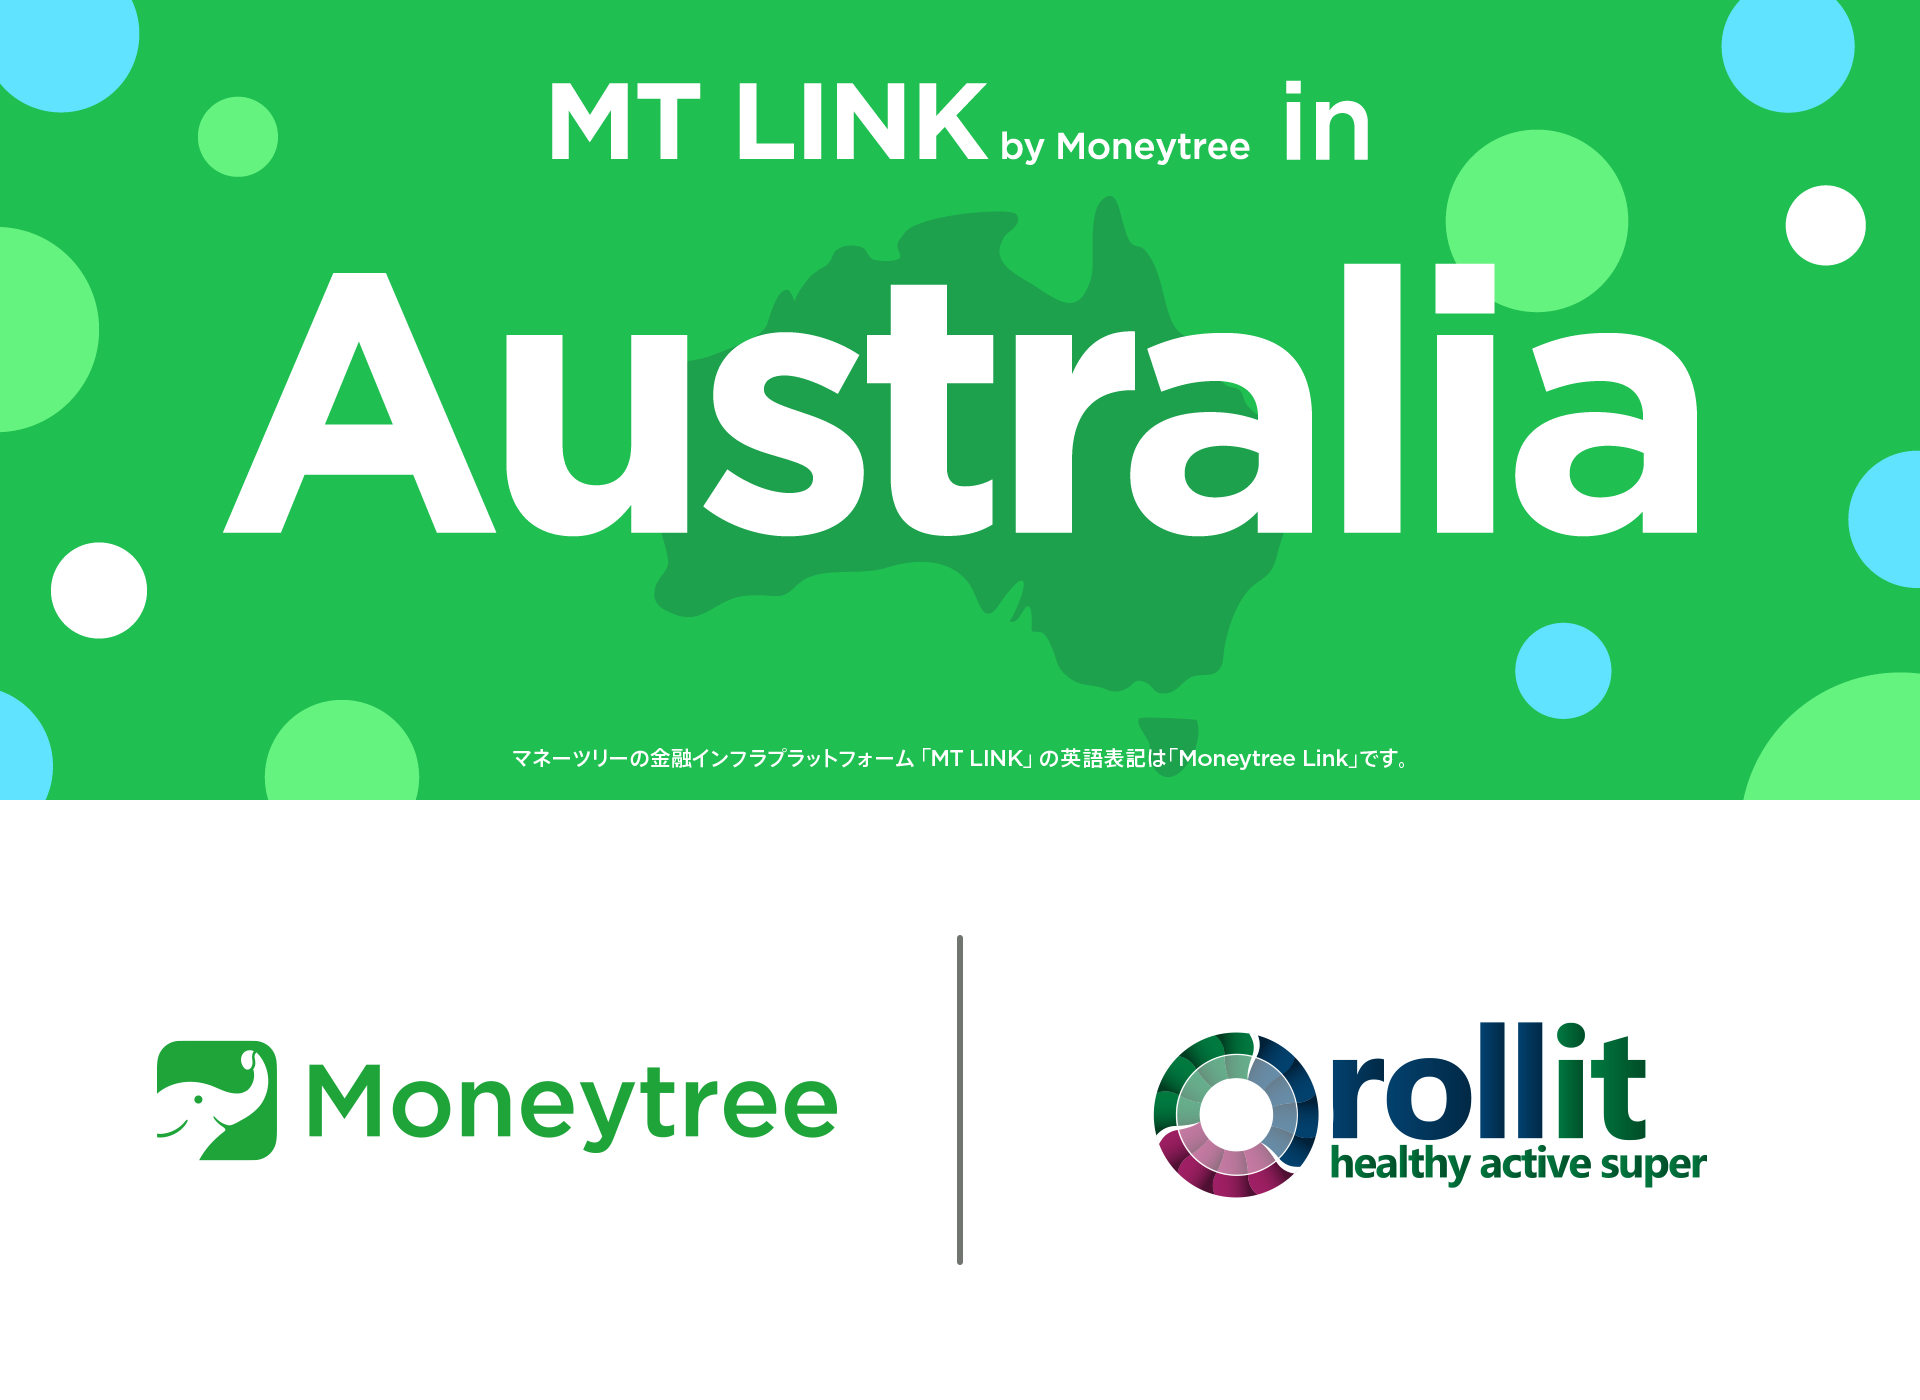 マネーツリー、Roll-it Superとの連携によりオーストラリアで
金融インフラサービス「MT LINK」の提供を開始